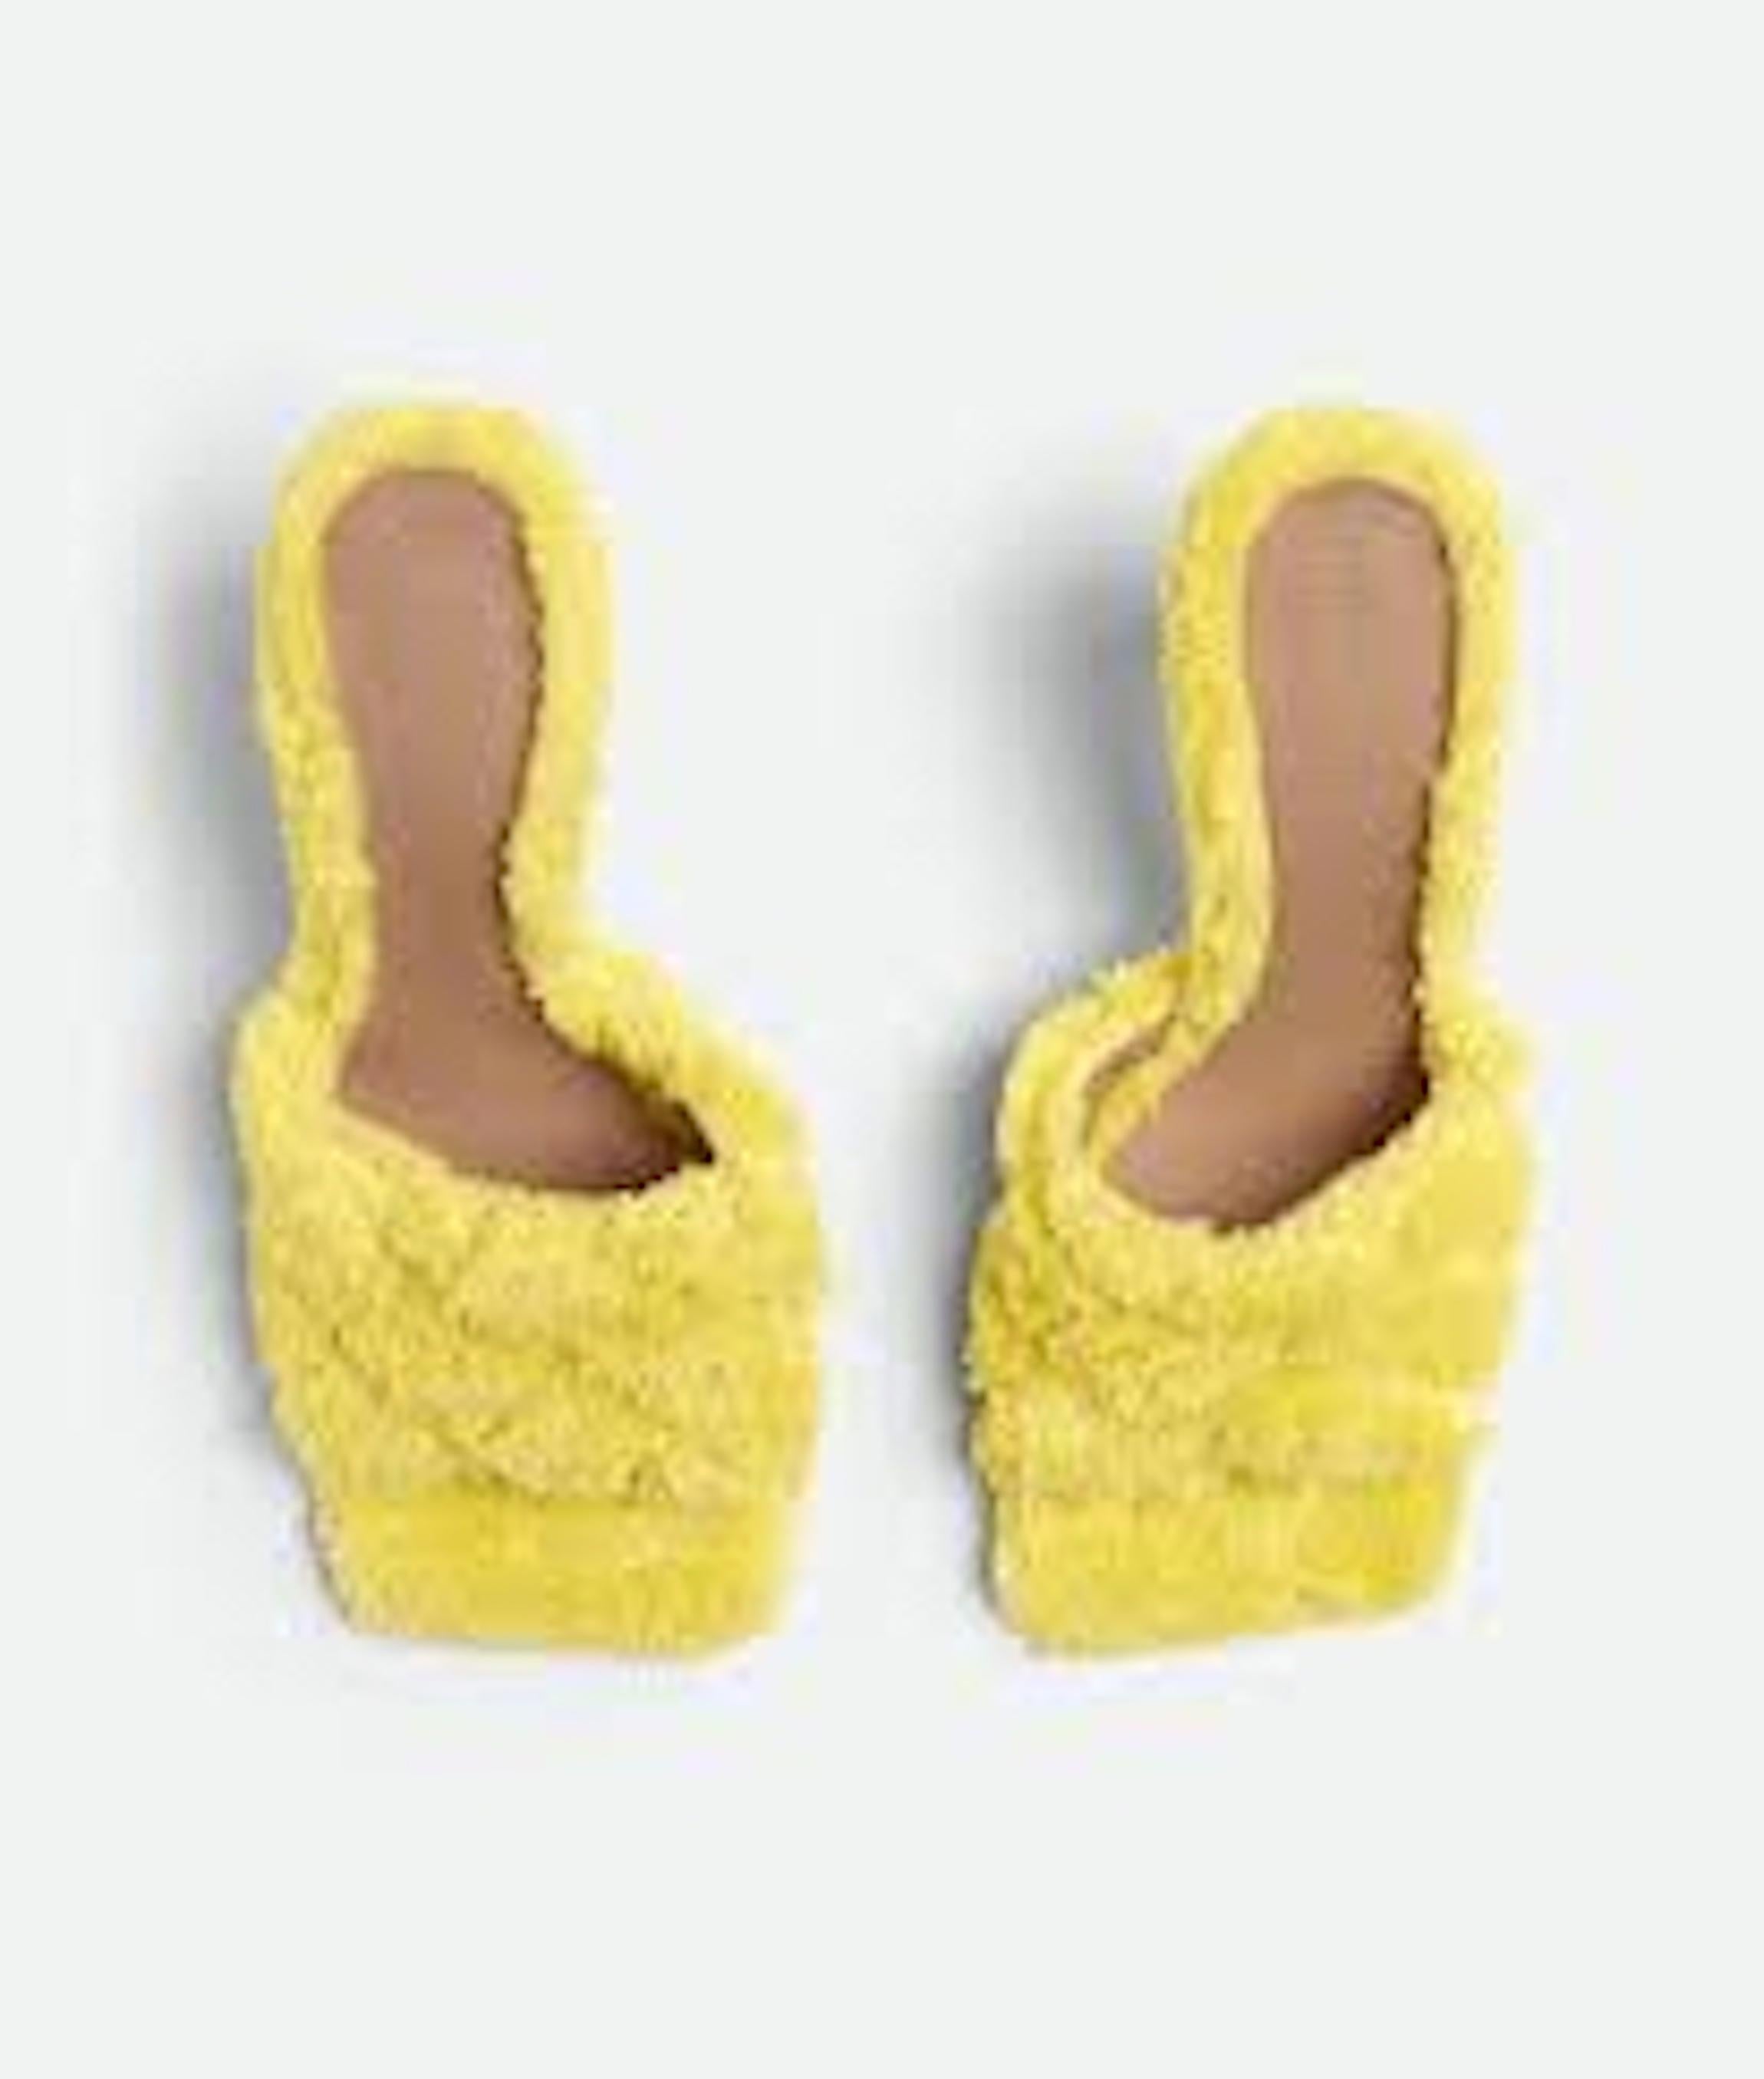 Bottega Veneta quilted padded sponge sandals.
3.5